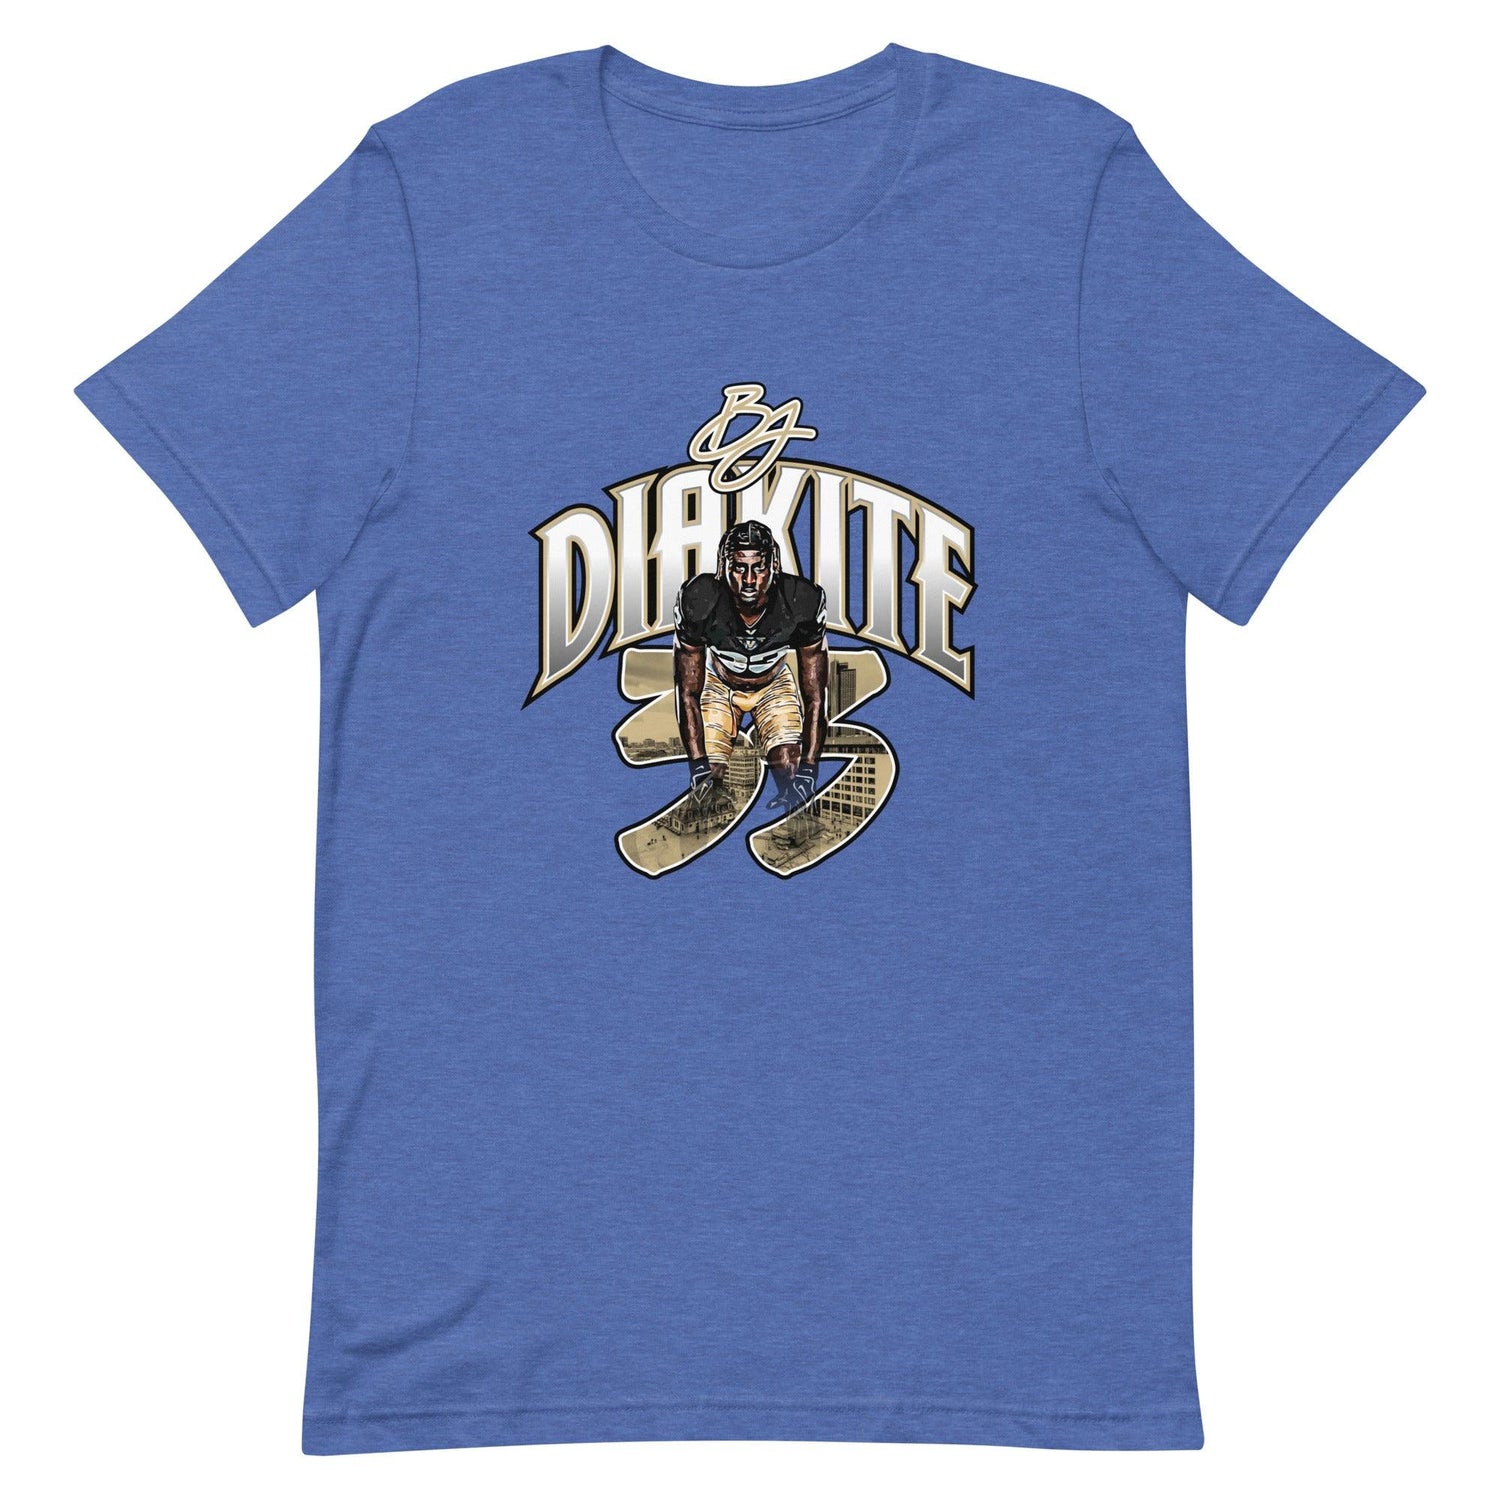 BJ Diakite "Gameday" t-shirt - Fan Arch